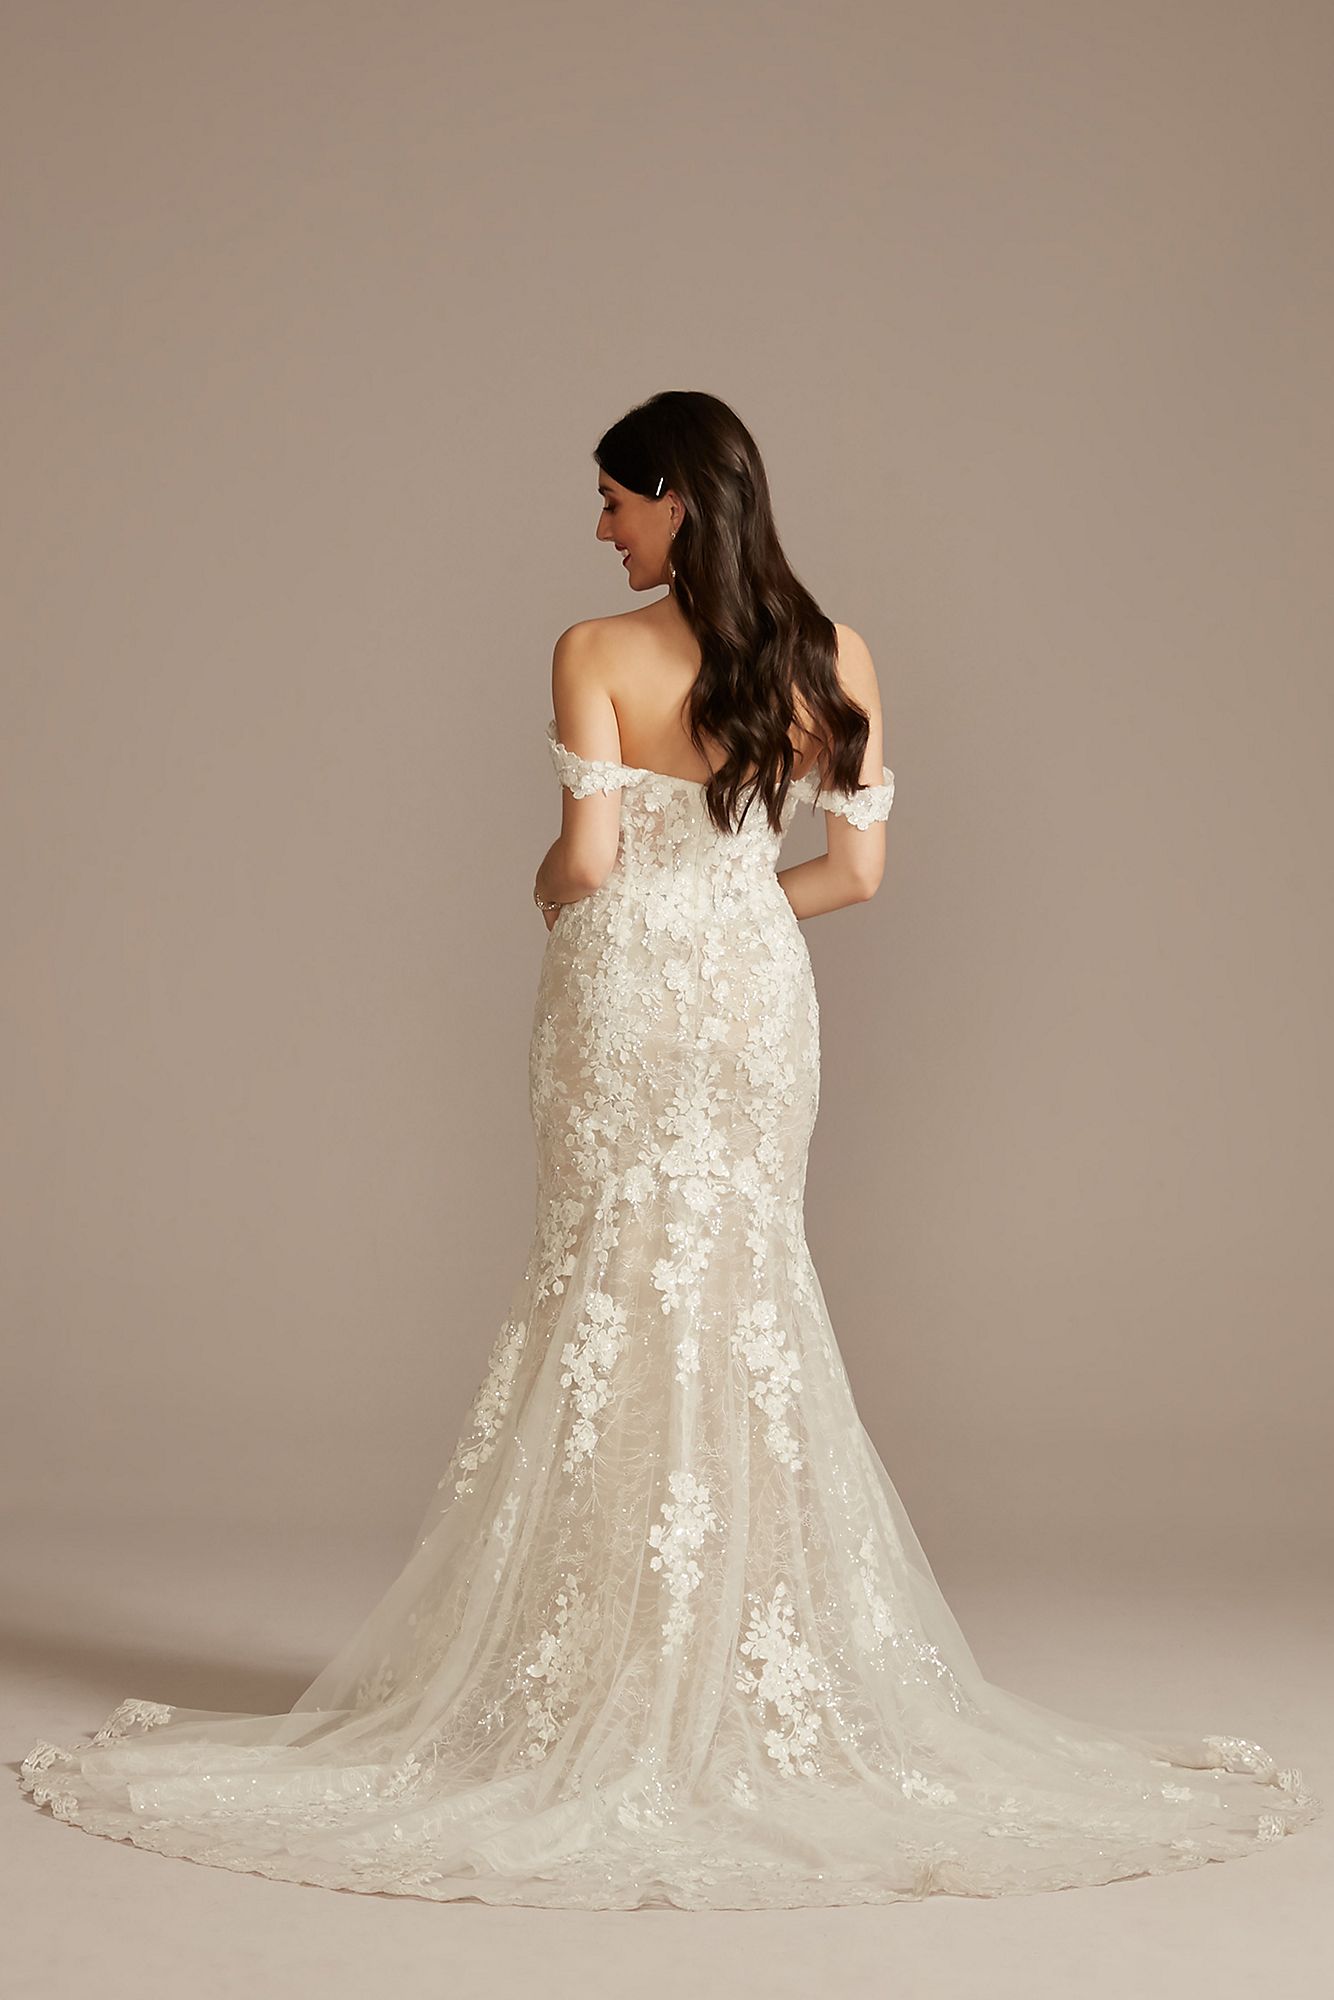 Embellished Lace Swag Sleeve Wedding Dress Galina Signature LSSWG899